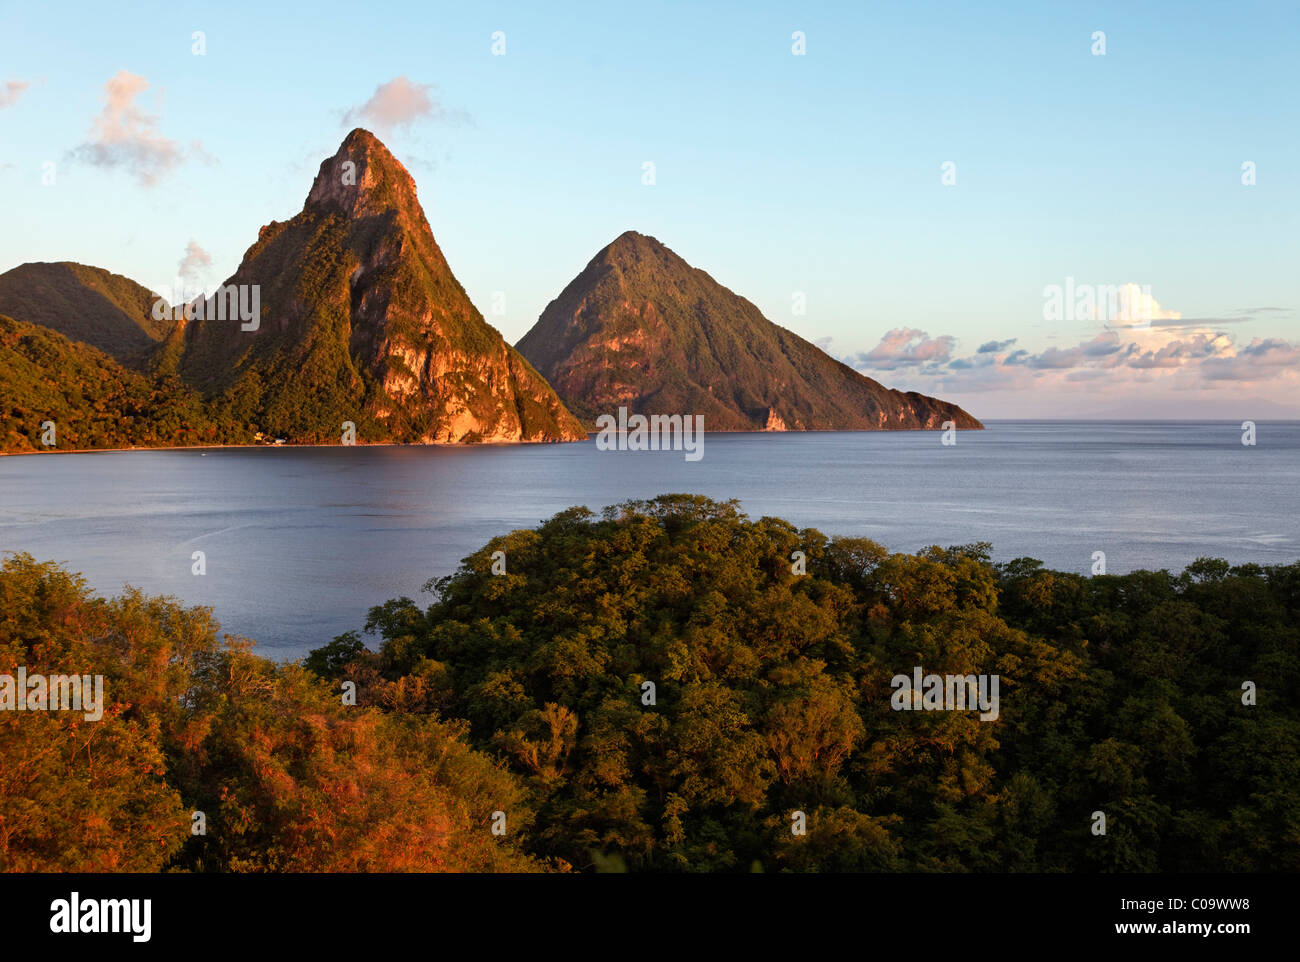 Montagne Piton, bay, foresta pluviale, nuvole, sera, romantico, Sito Patrimonio Mondiale dell'UNESCO, Soufrière, Saint Lucia, LCA Foto Stock